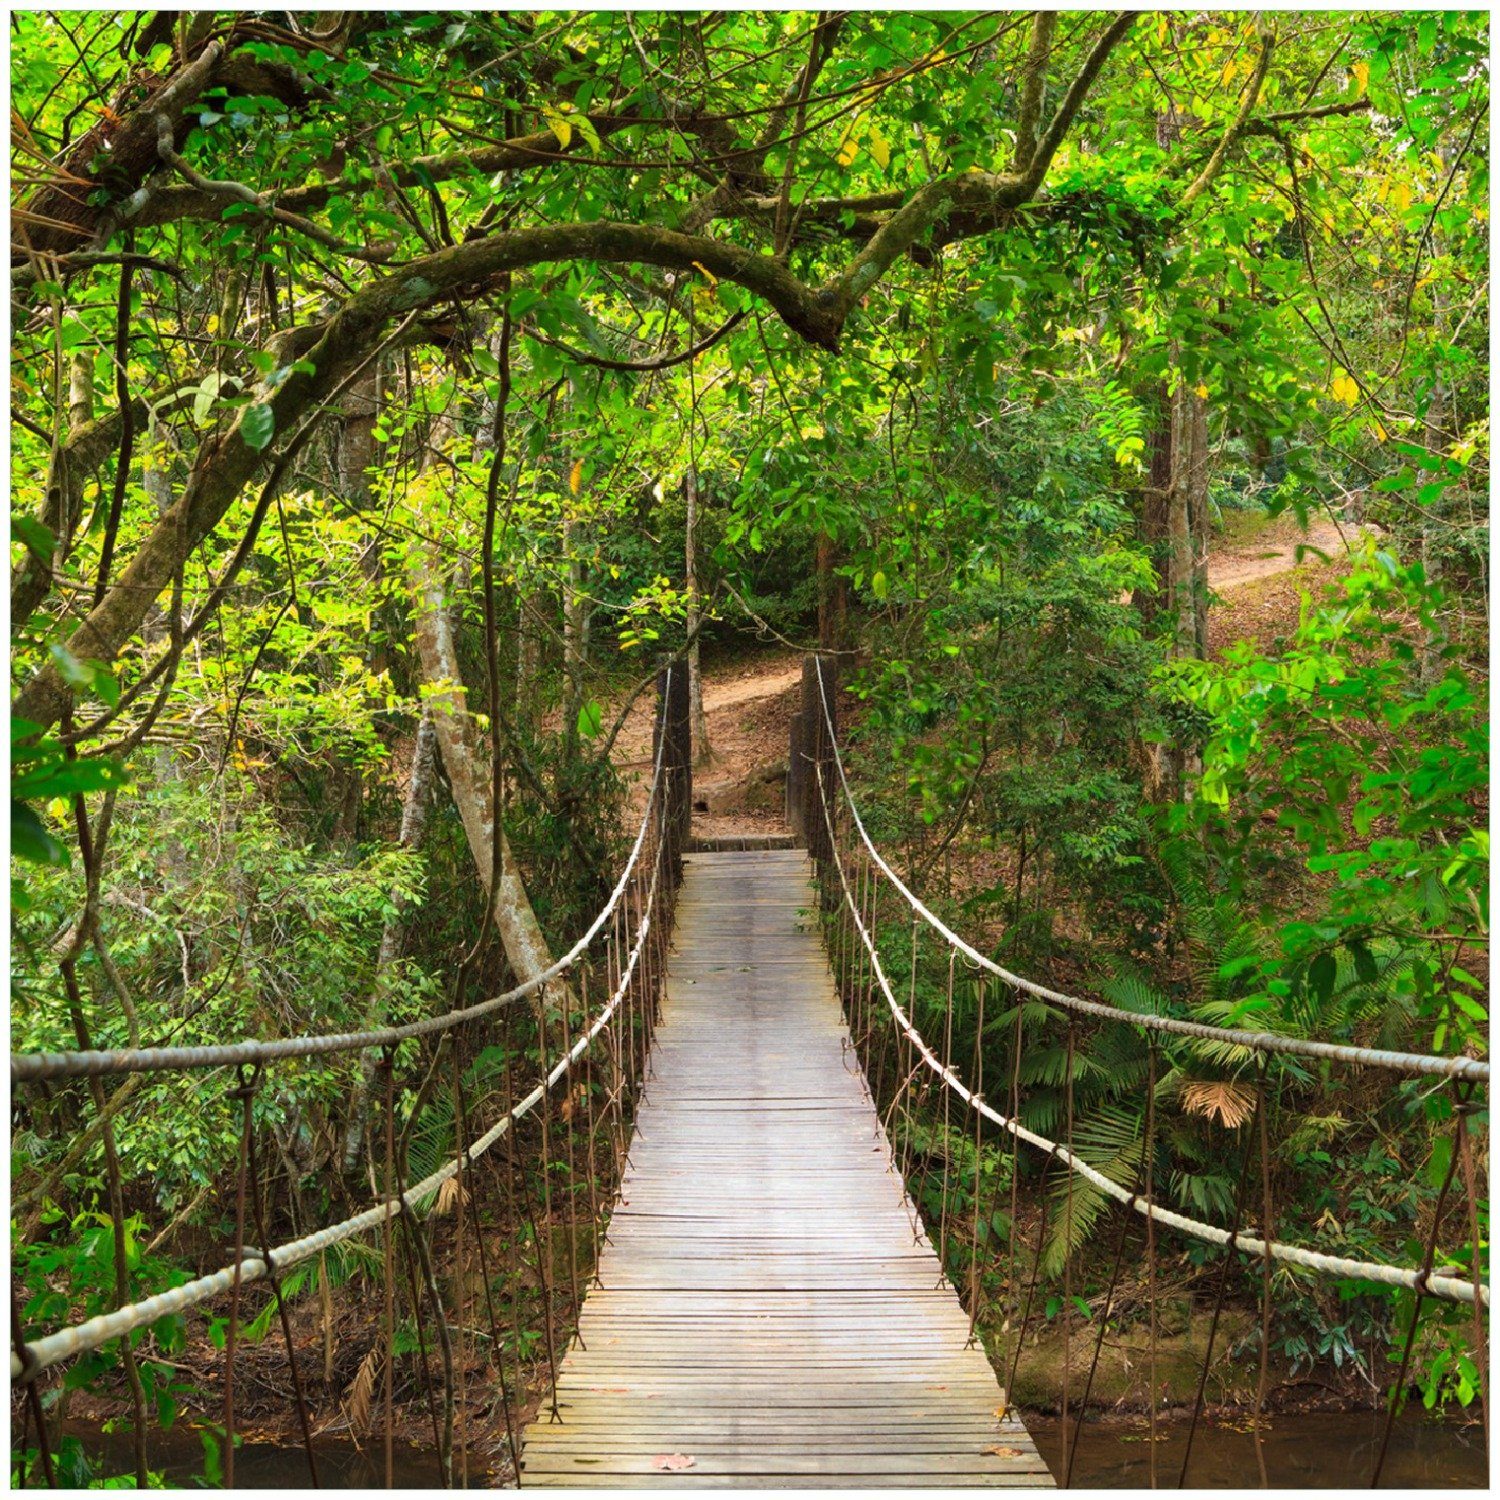 Memoboard grüner Hängebrücke im Wallario Dschungel Urwald